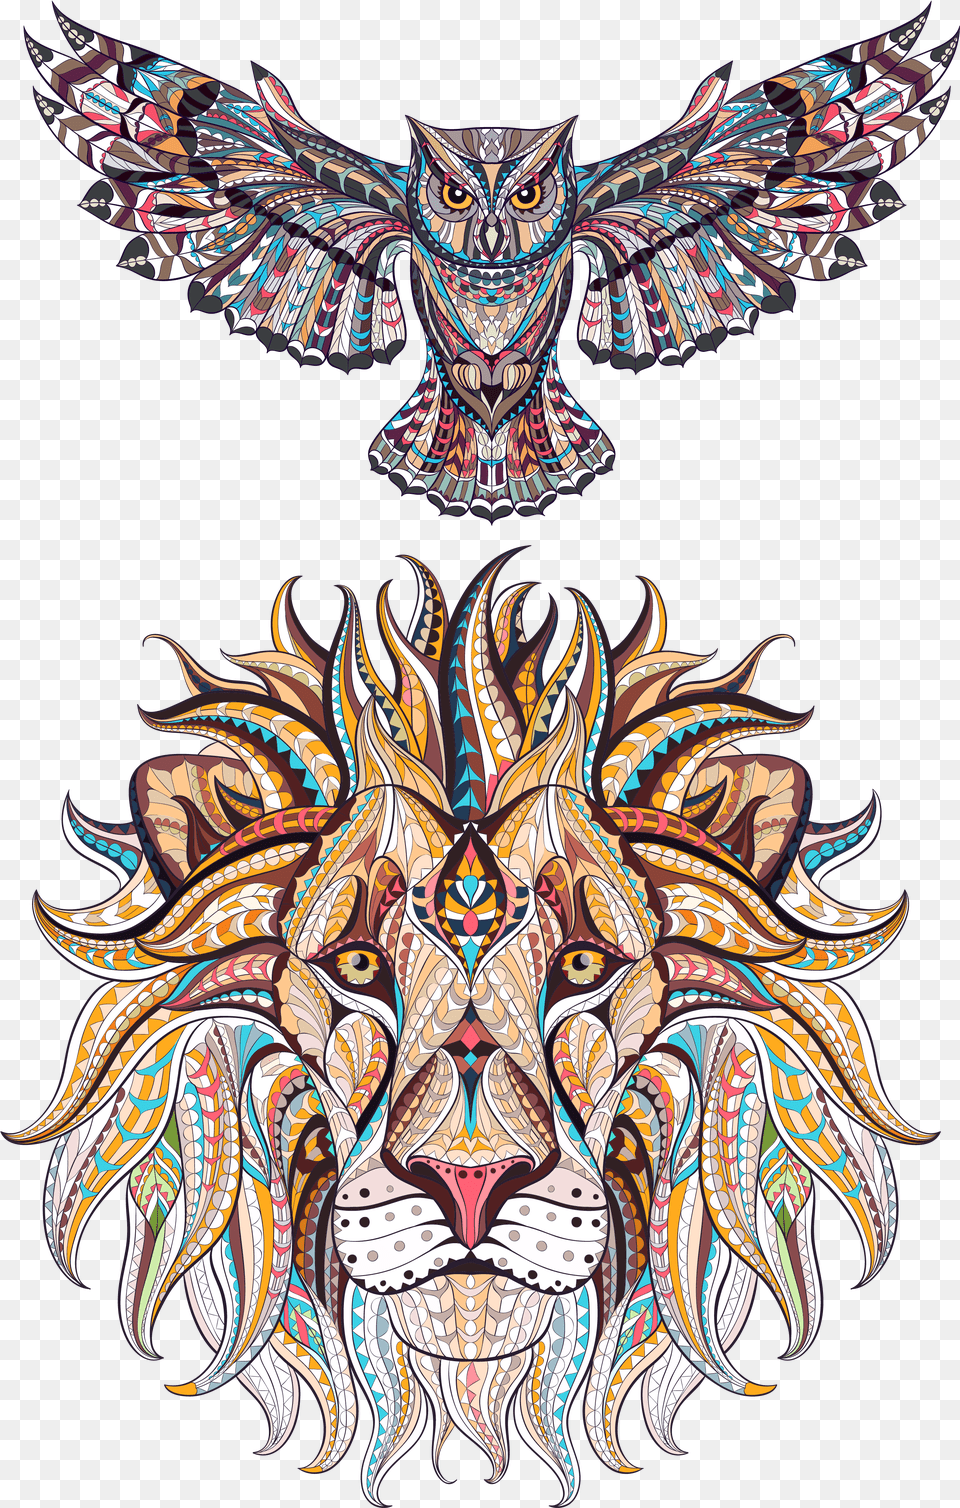 Illustration Vector Animal Exquisite Hq Adult Coloring Book Lion, Pattern, Art, Emblem, Symbol Png Image